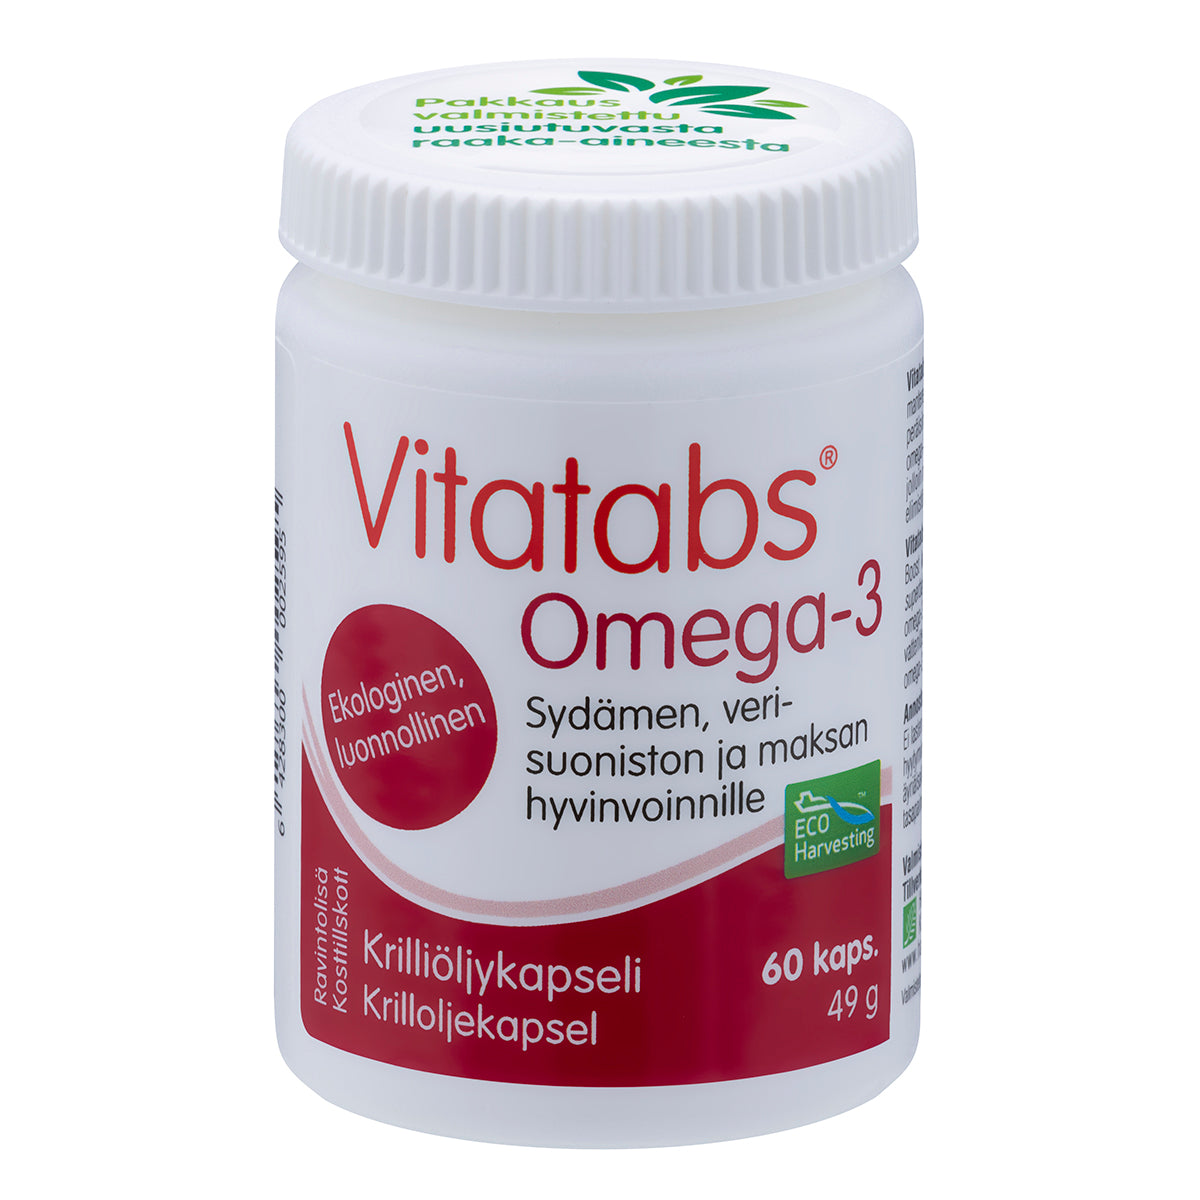 Vitatabs Omega-3 Krilliöljykapseli 60 kaps.